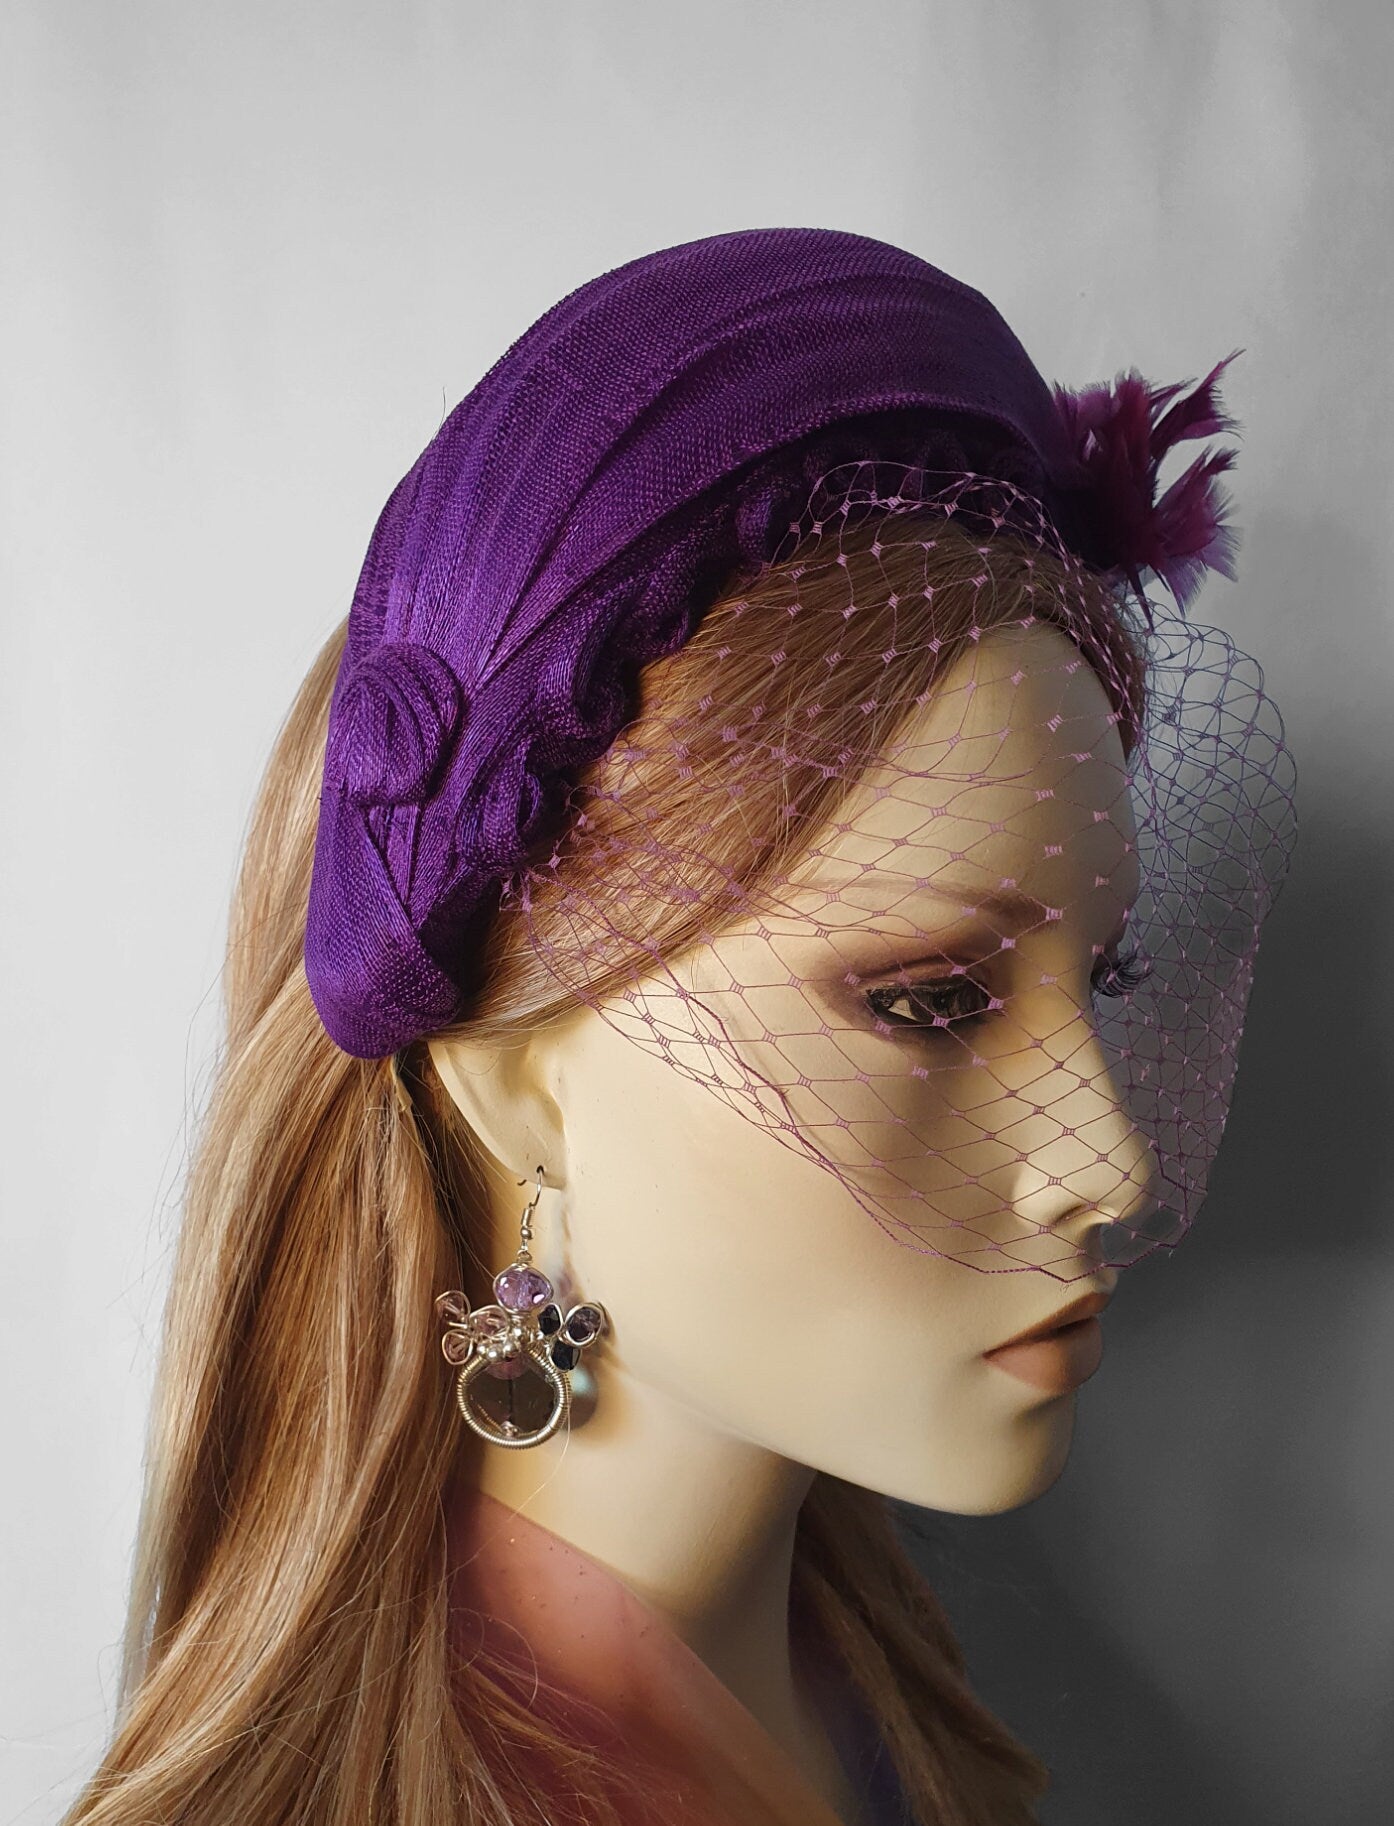 Hoofdband paars abaca zijde met sluier handgemaakt, voor een speciale gelegenheid. Fascinator, Tiara, Haarband